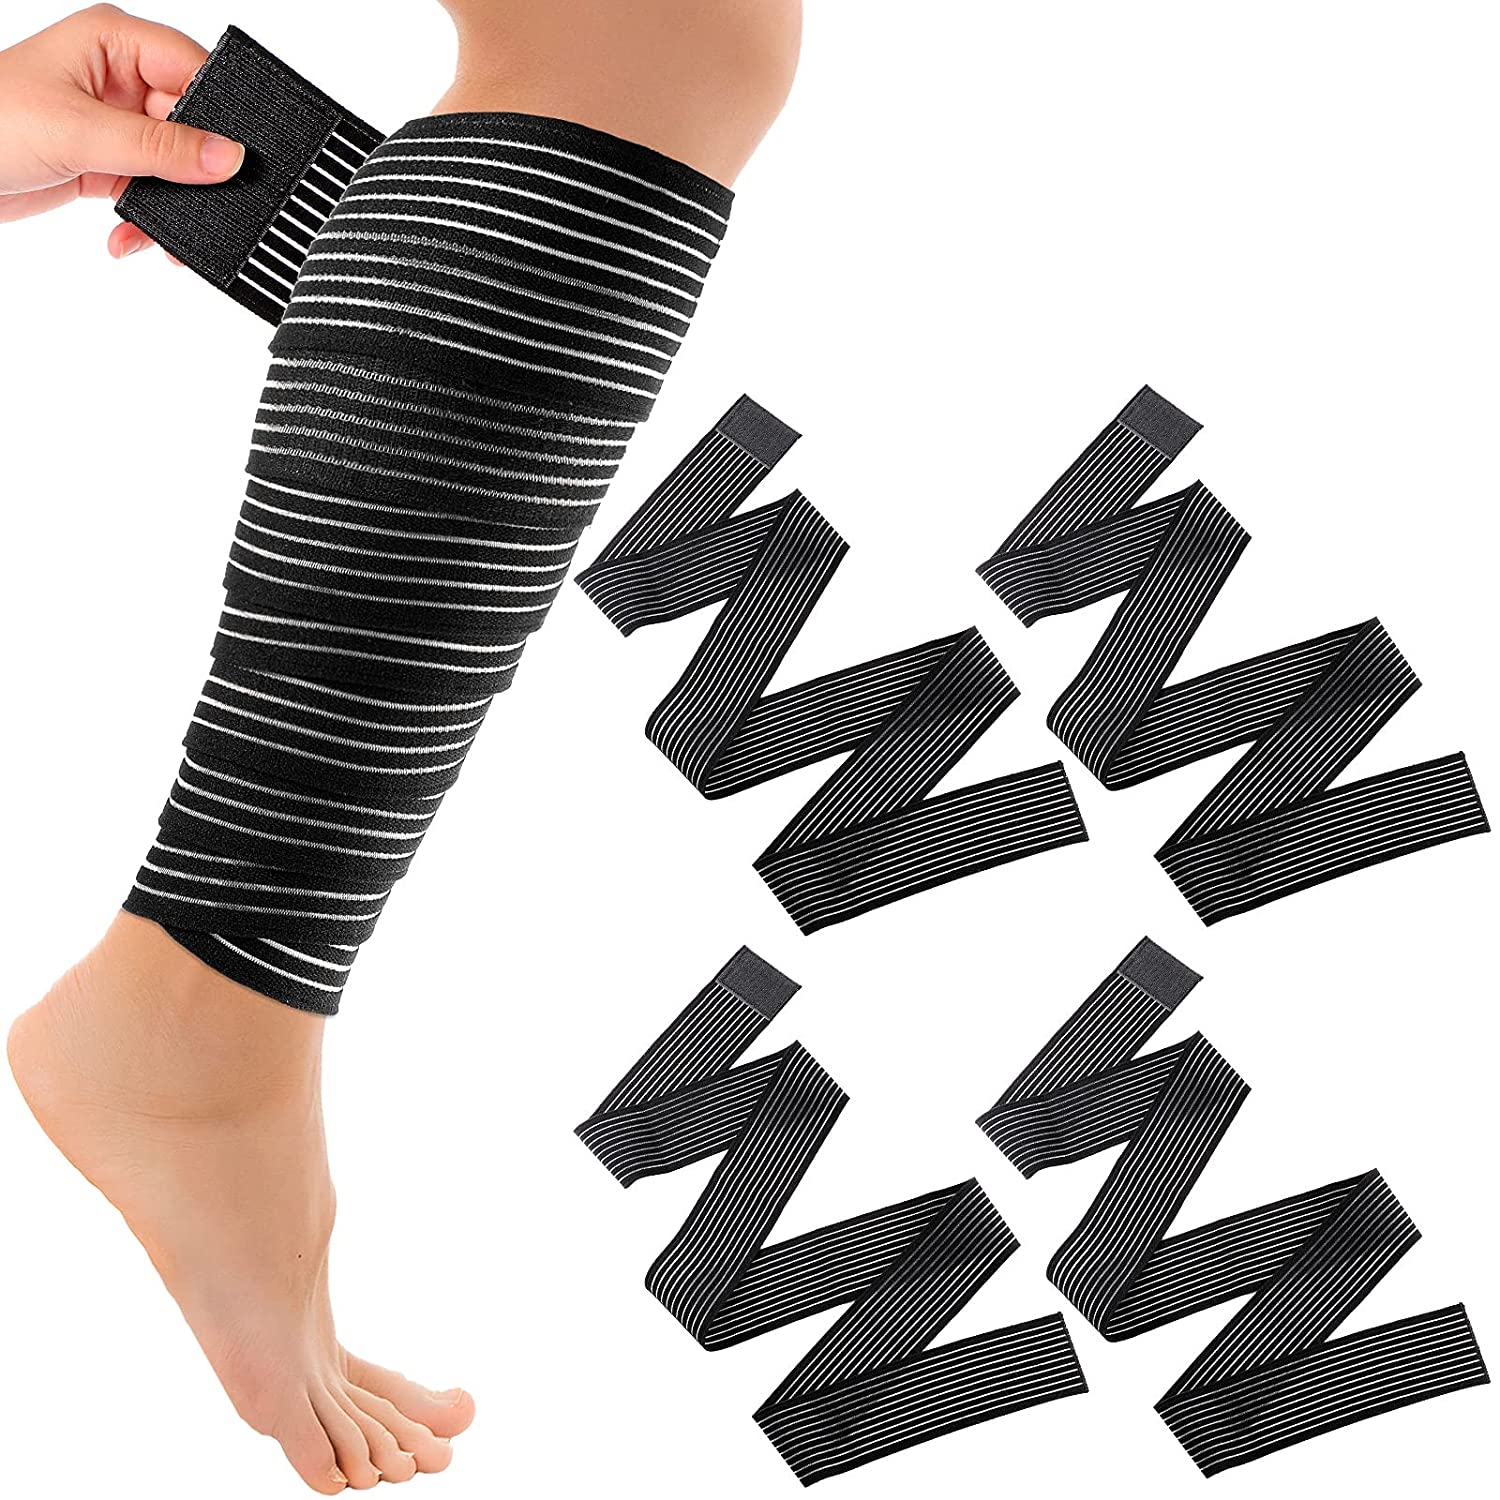 Supporto elastico sportivo regolabile traspirante per il ginocchio